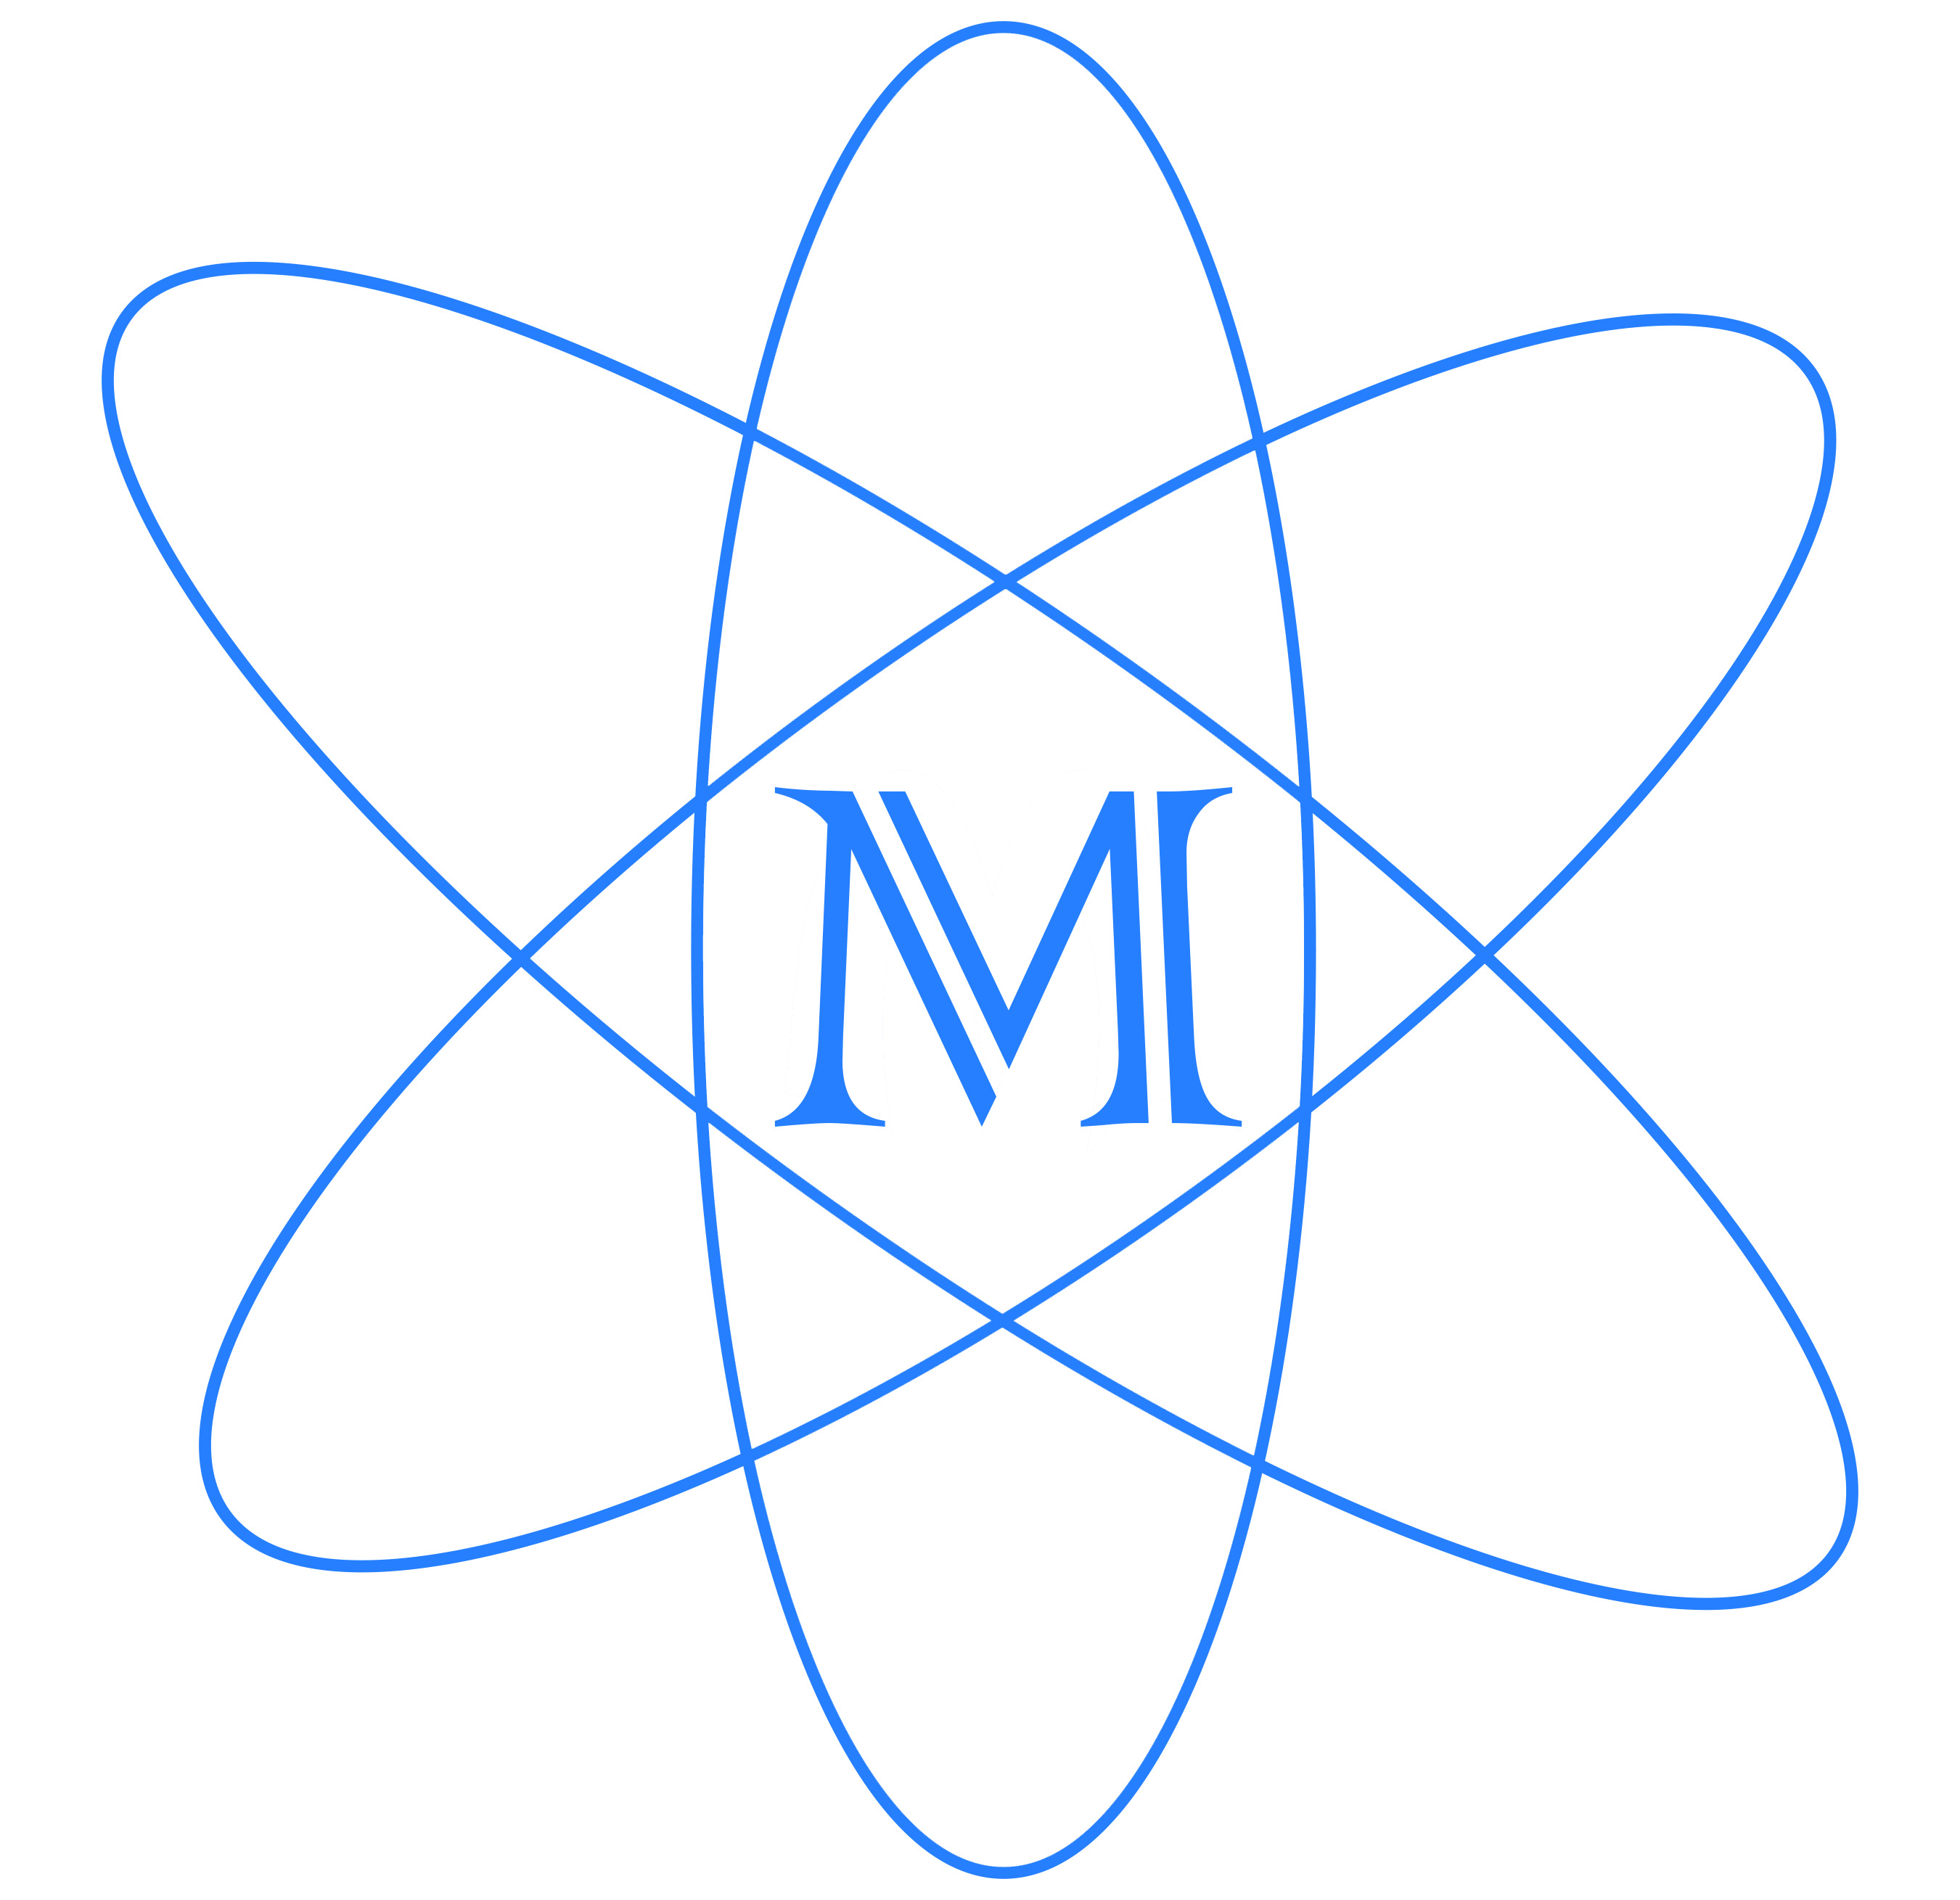 Maxi_logo